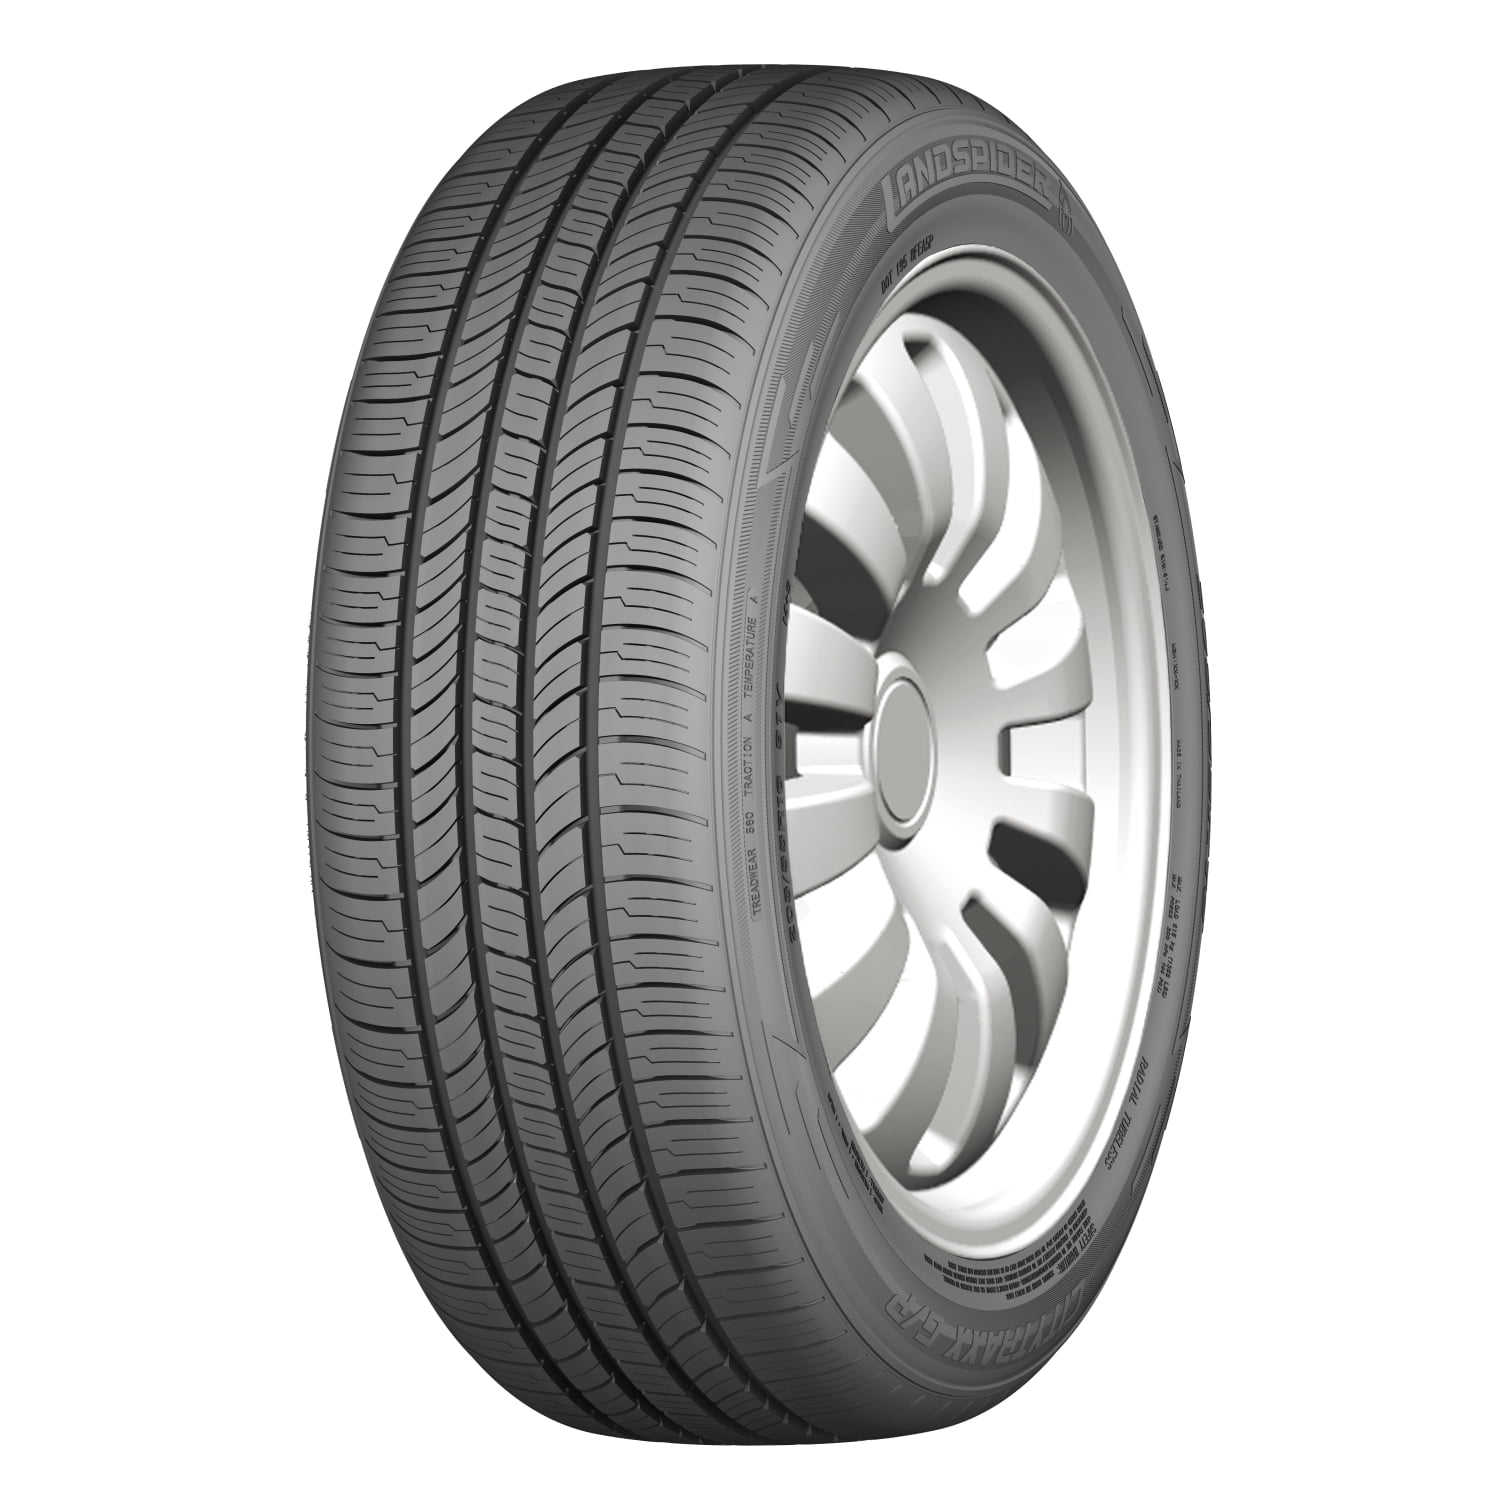 Landspider Citytraxx G/P 195/65R15 91H Bsw All-Season tire